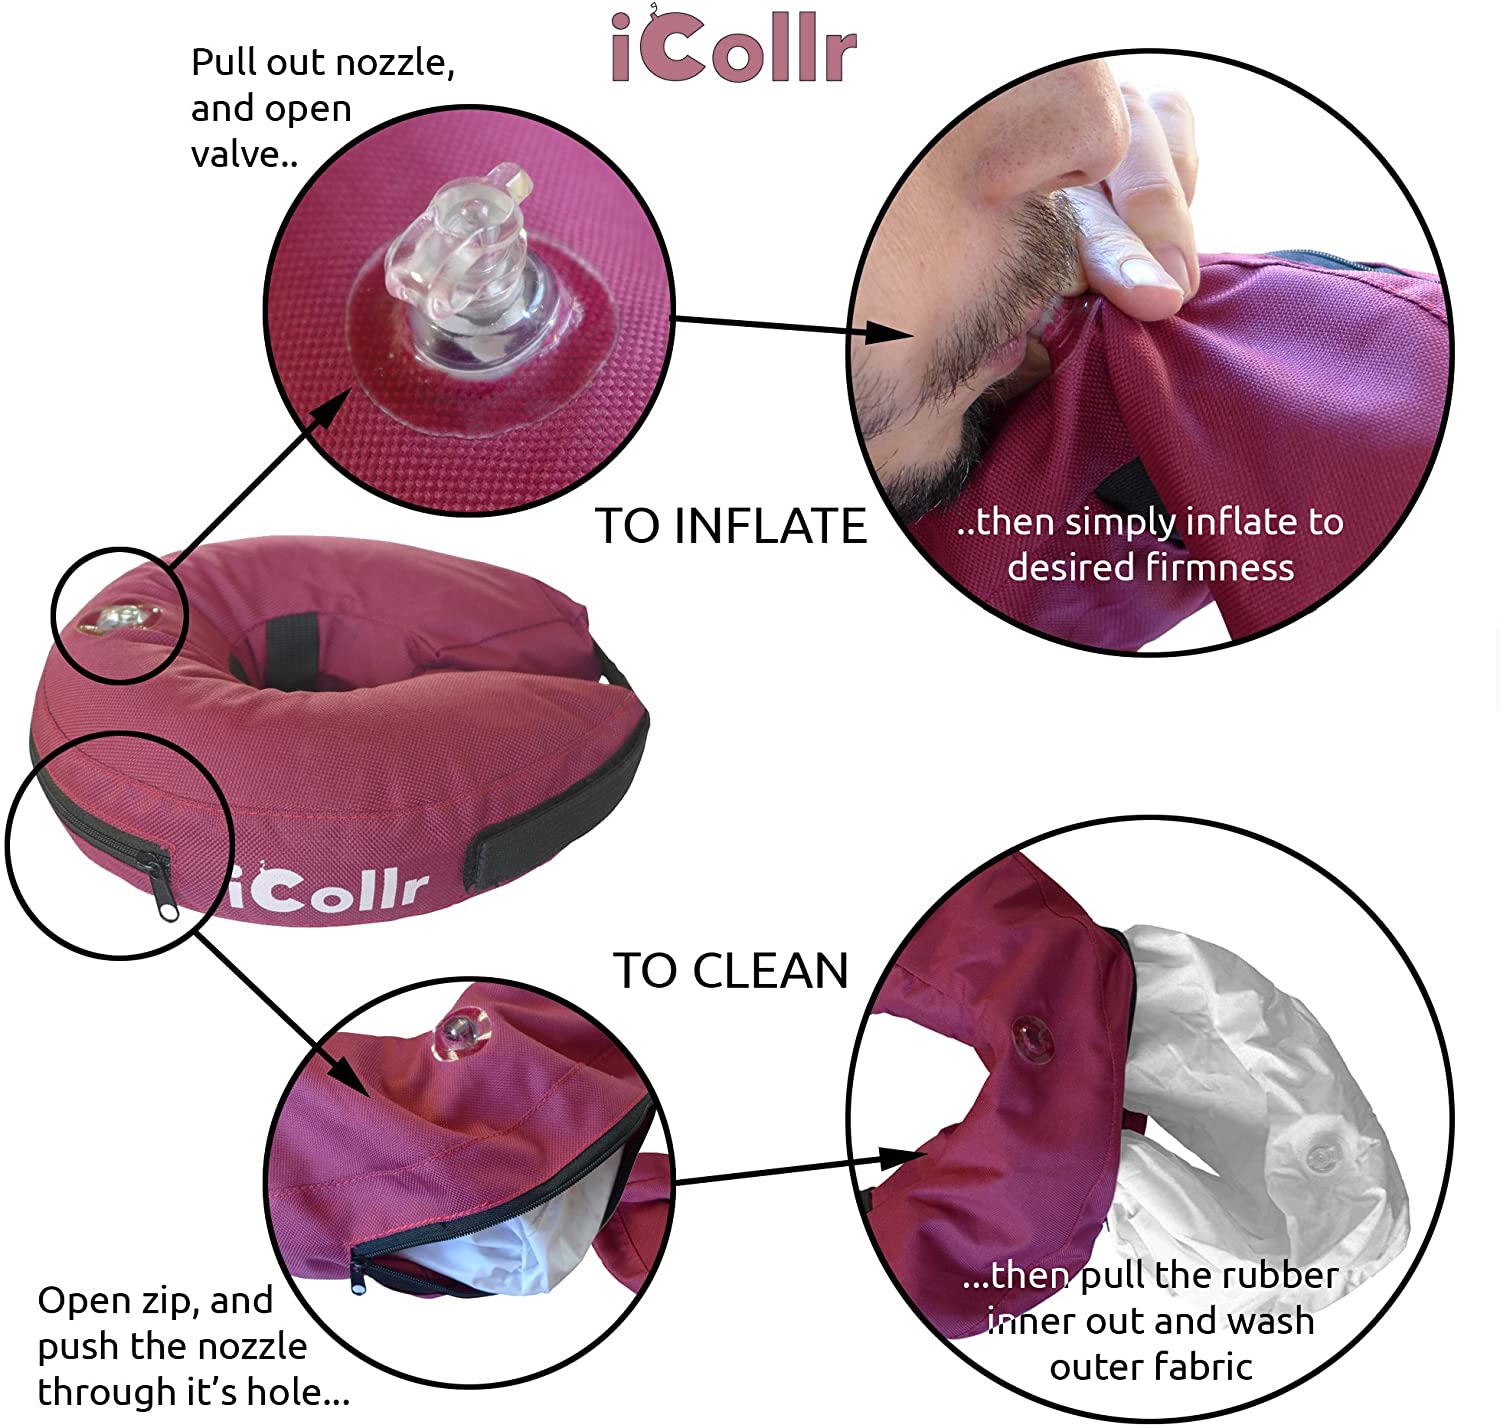  iCollr - El Collar Inflable - Collar Protector para Perros y Gatos en la Recuperación Postoperatoria 